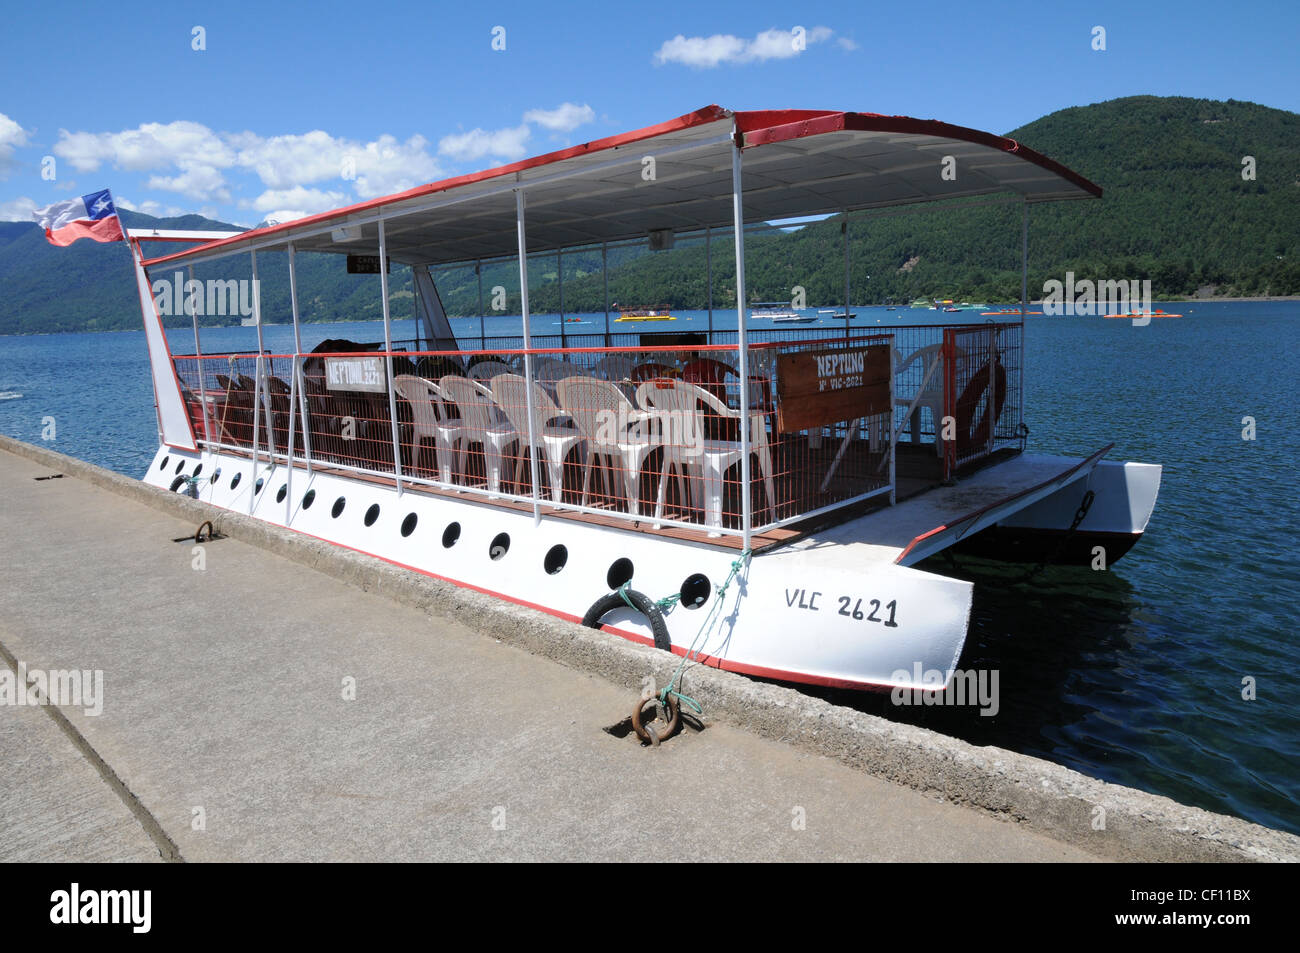 Une embarcation de plaisance sur le lac Villarrica, Pucon, Chili, région de l'Araucanie Banque D'Images